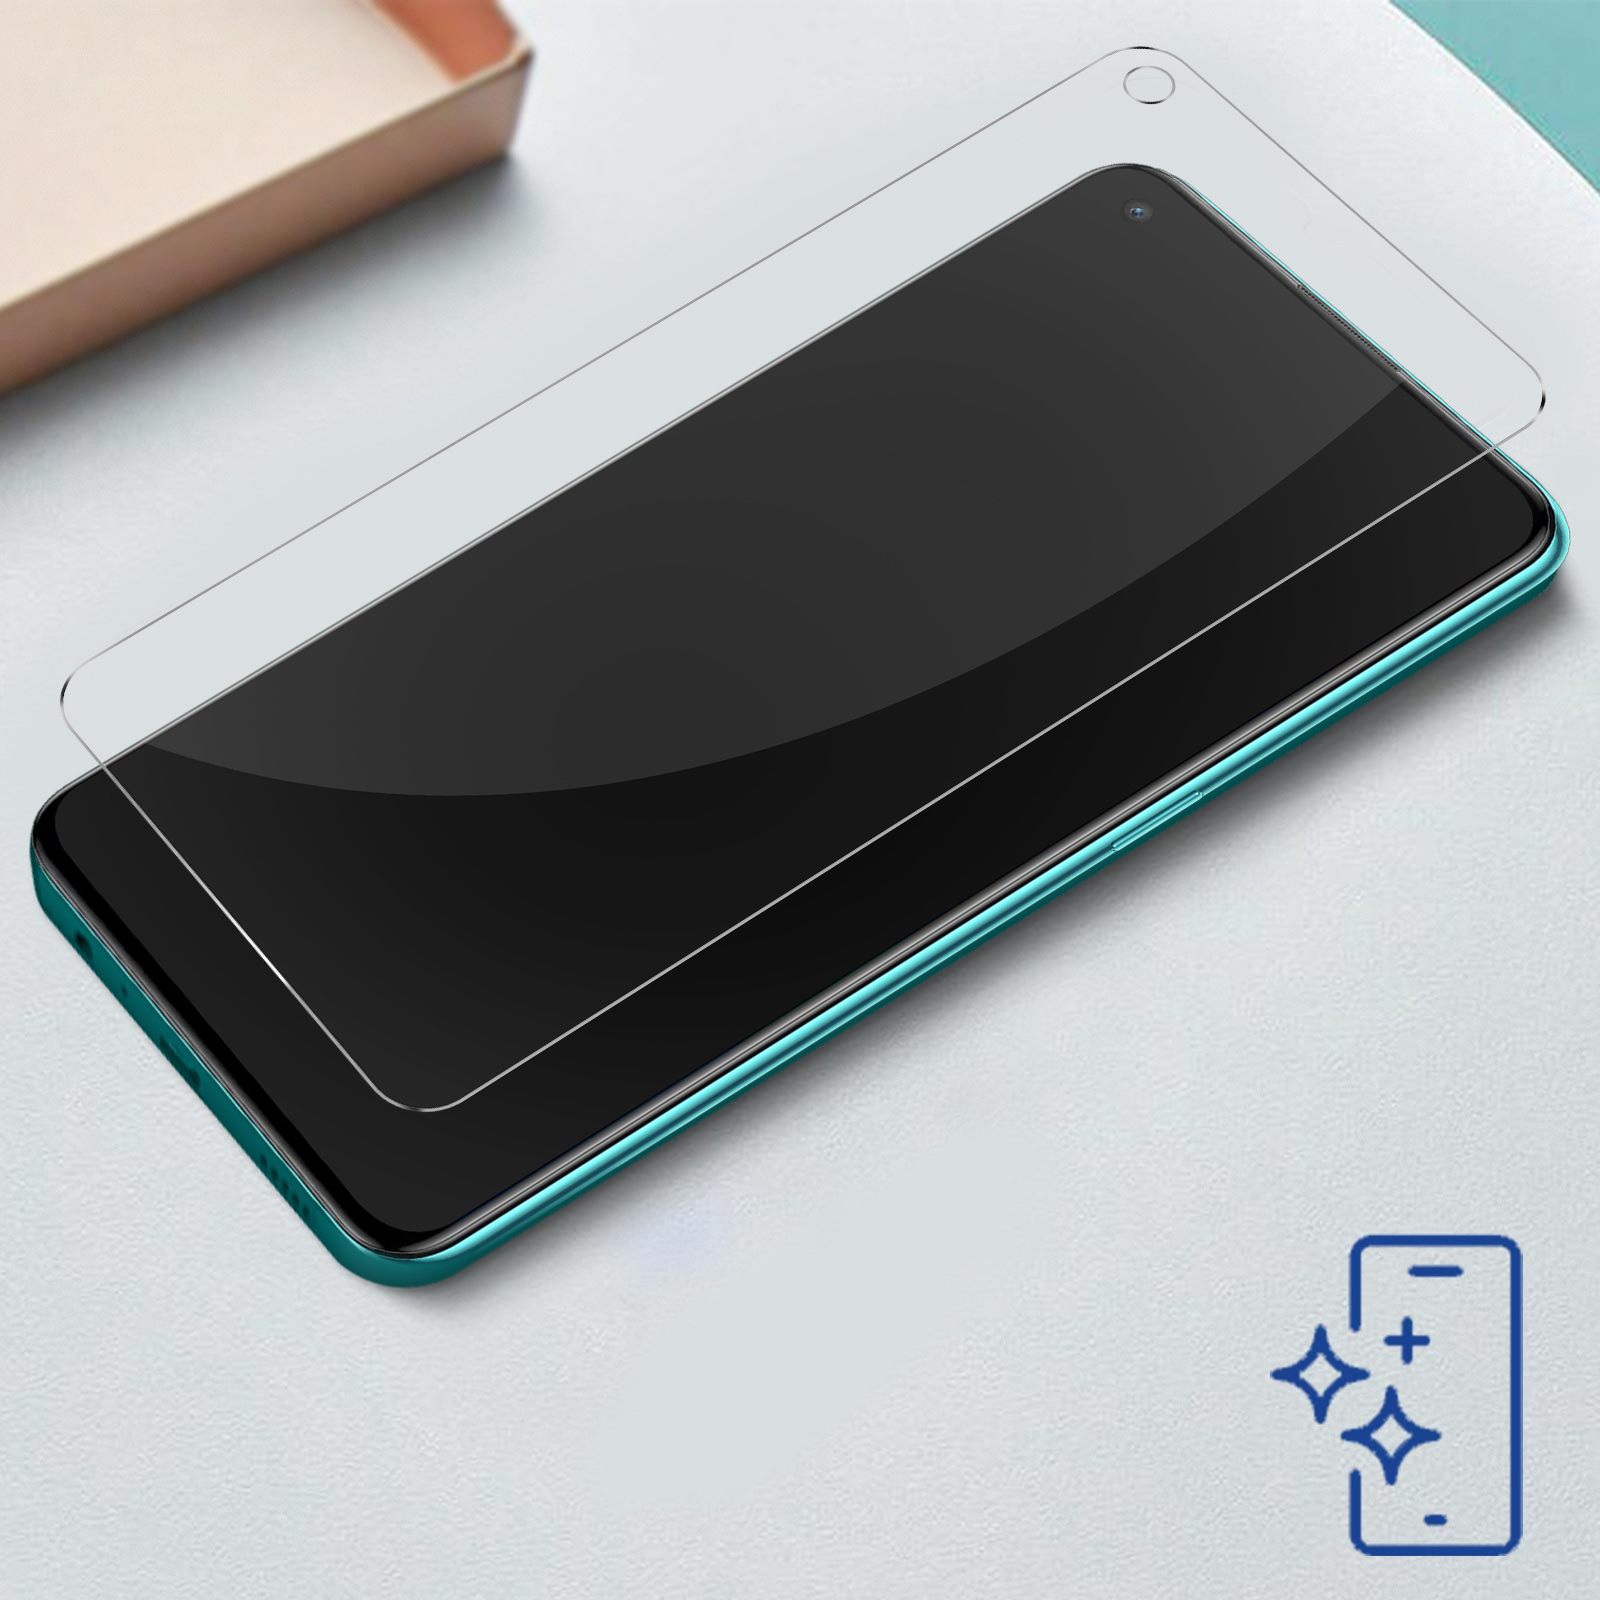 2 OnePlus OnePlus FlexibleGlass 5G) Lite OnePlus CE Lite 3MK Nord Glas(für Nord - 2 3mk 5G CE